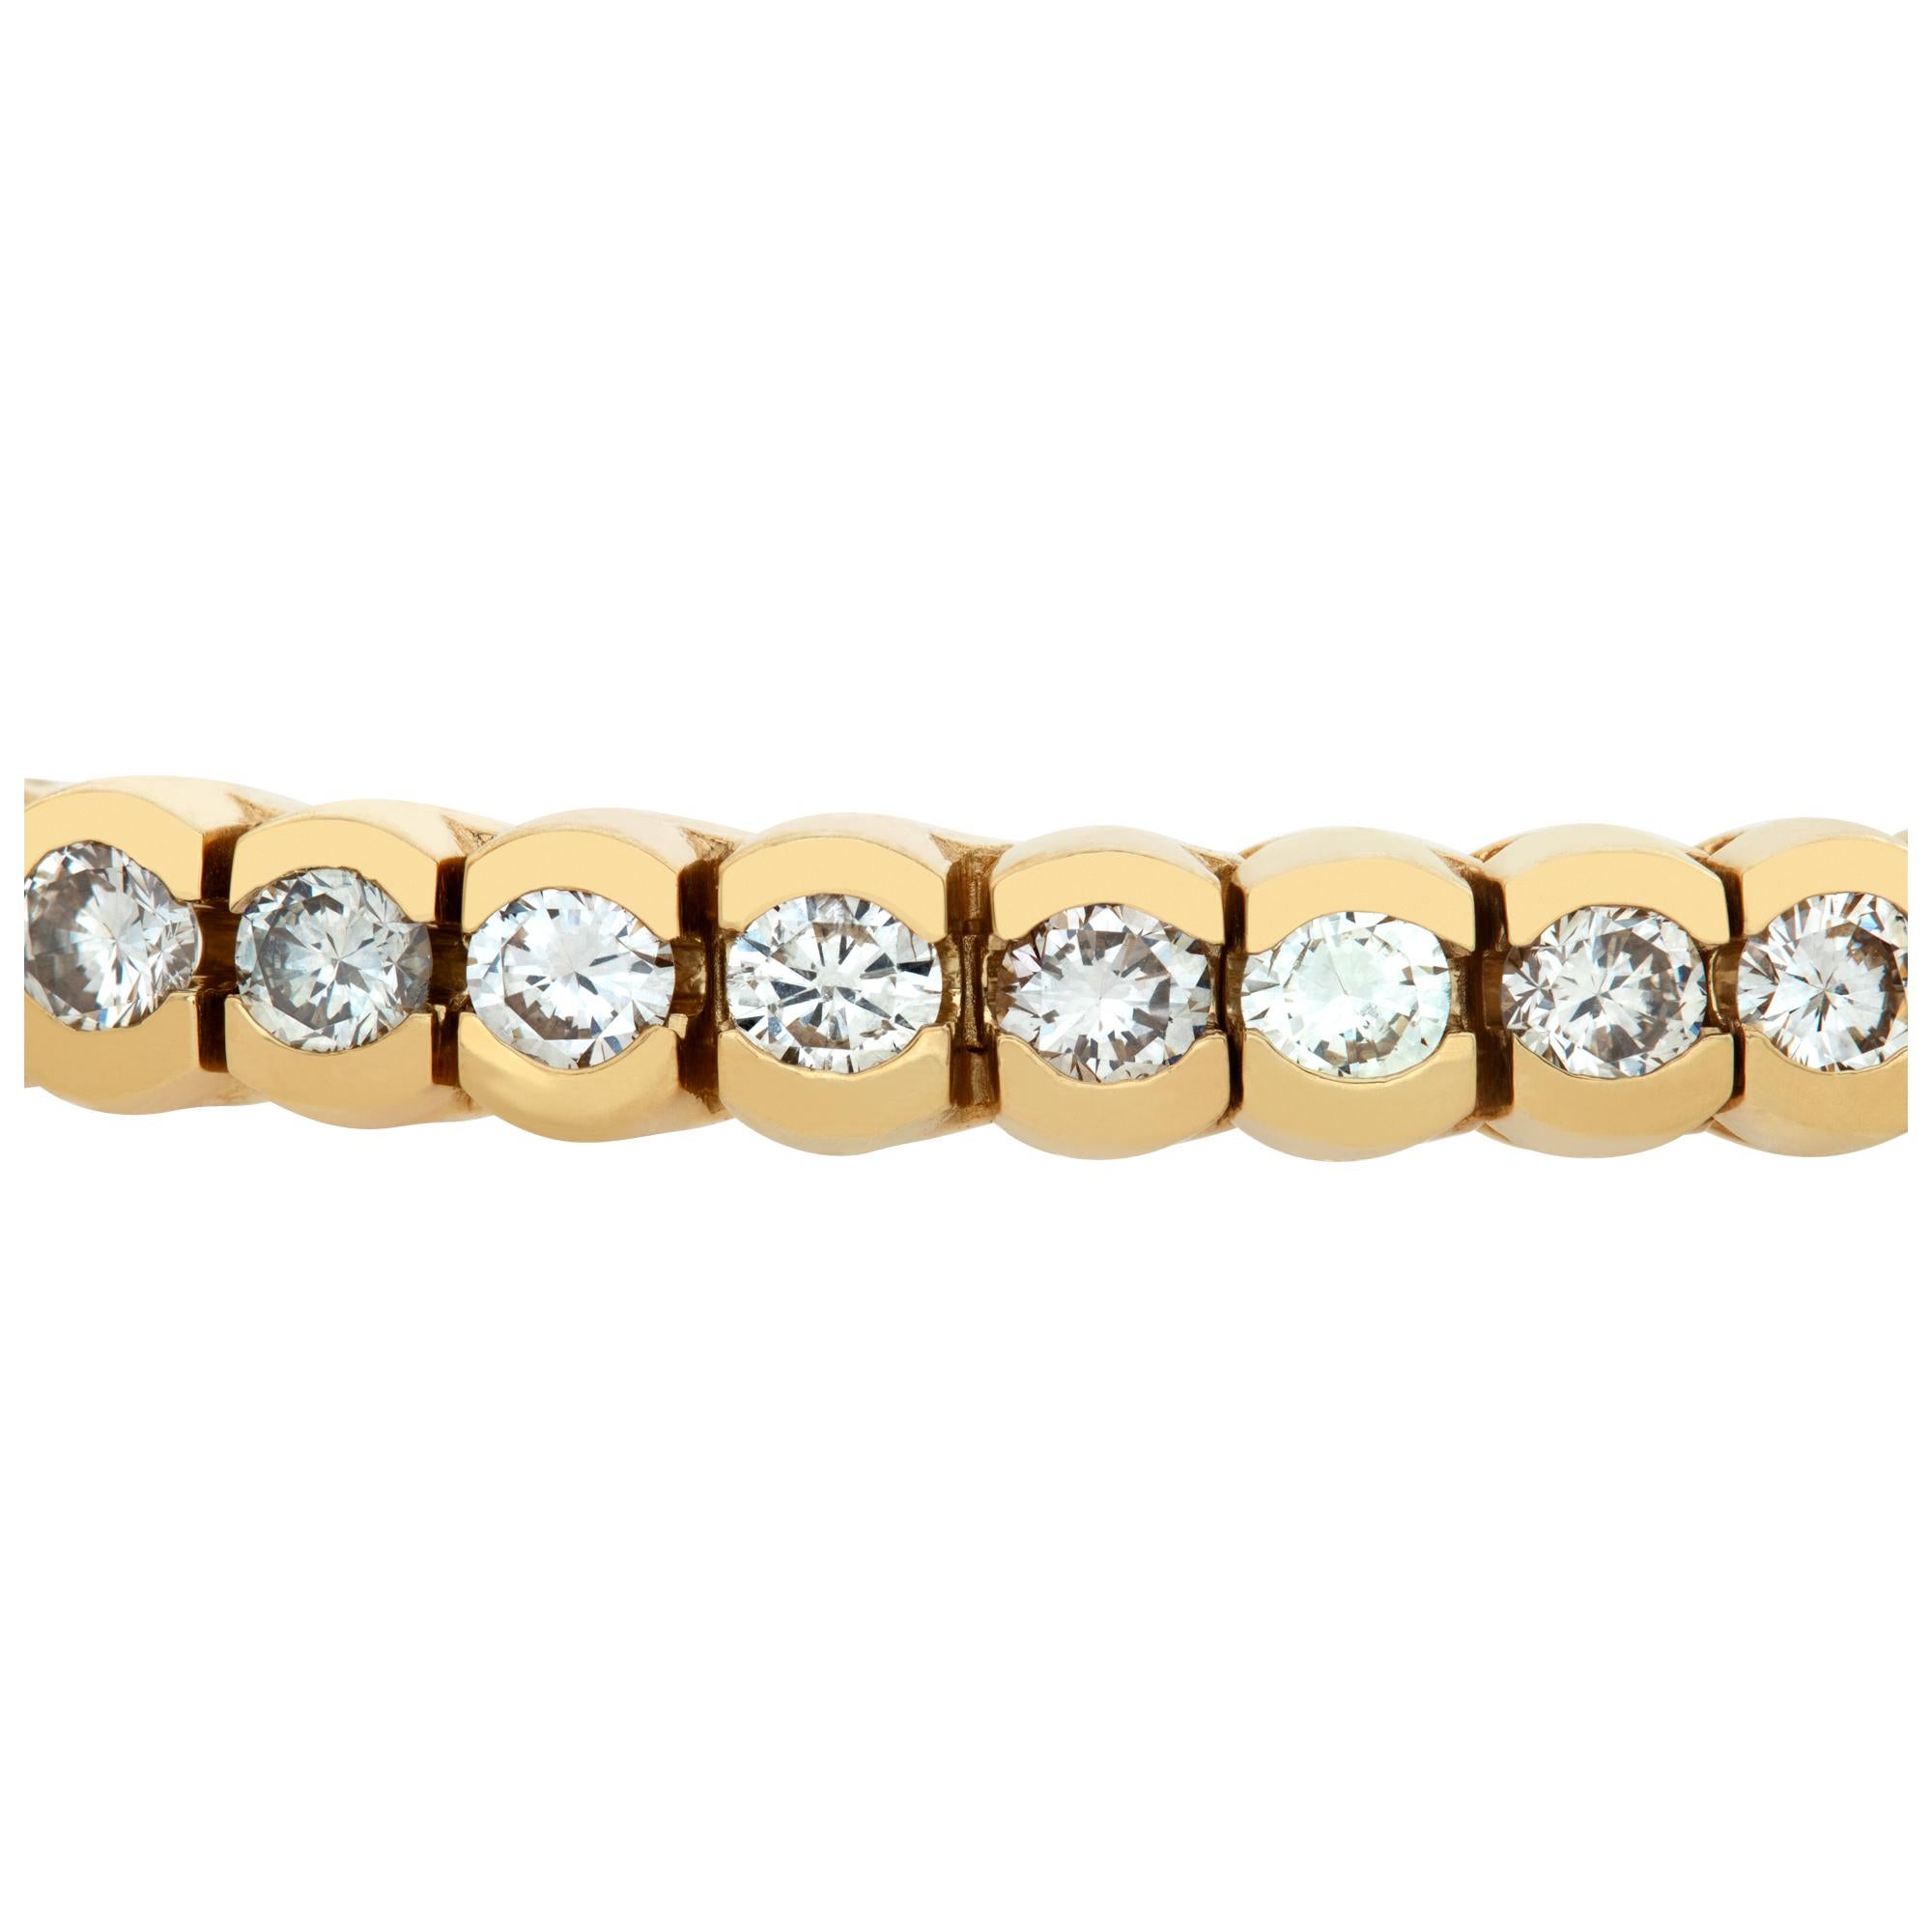 Élégant bracelet en ligne de diamants en or jaune 14k avec plus de 7 carats de diamants ronds (couleur J-K, pureté SI), longueur 7 pouces, largeur 5mm.
